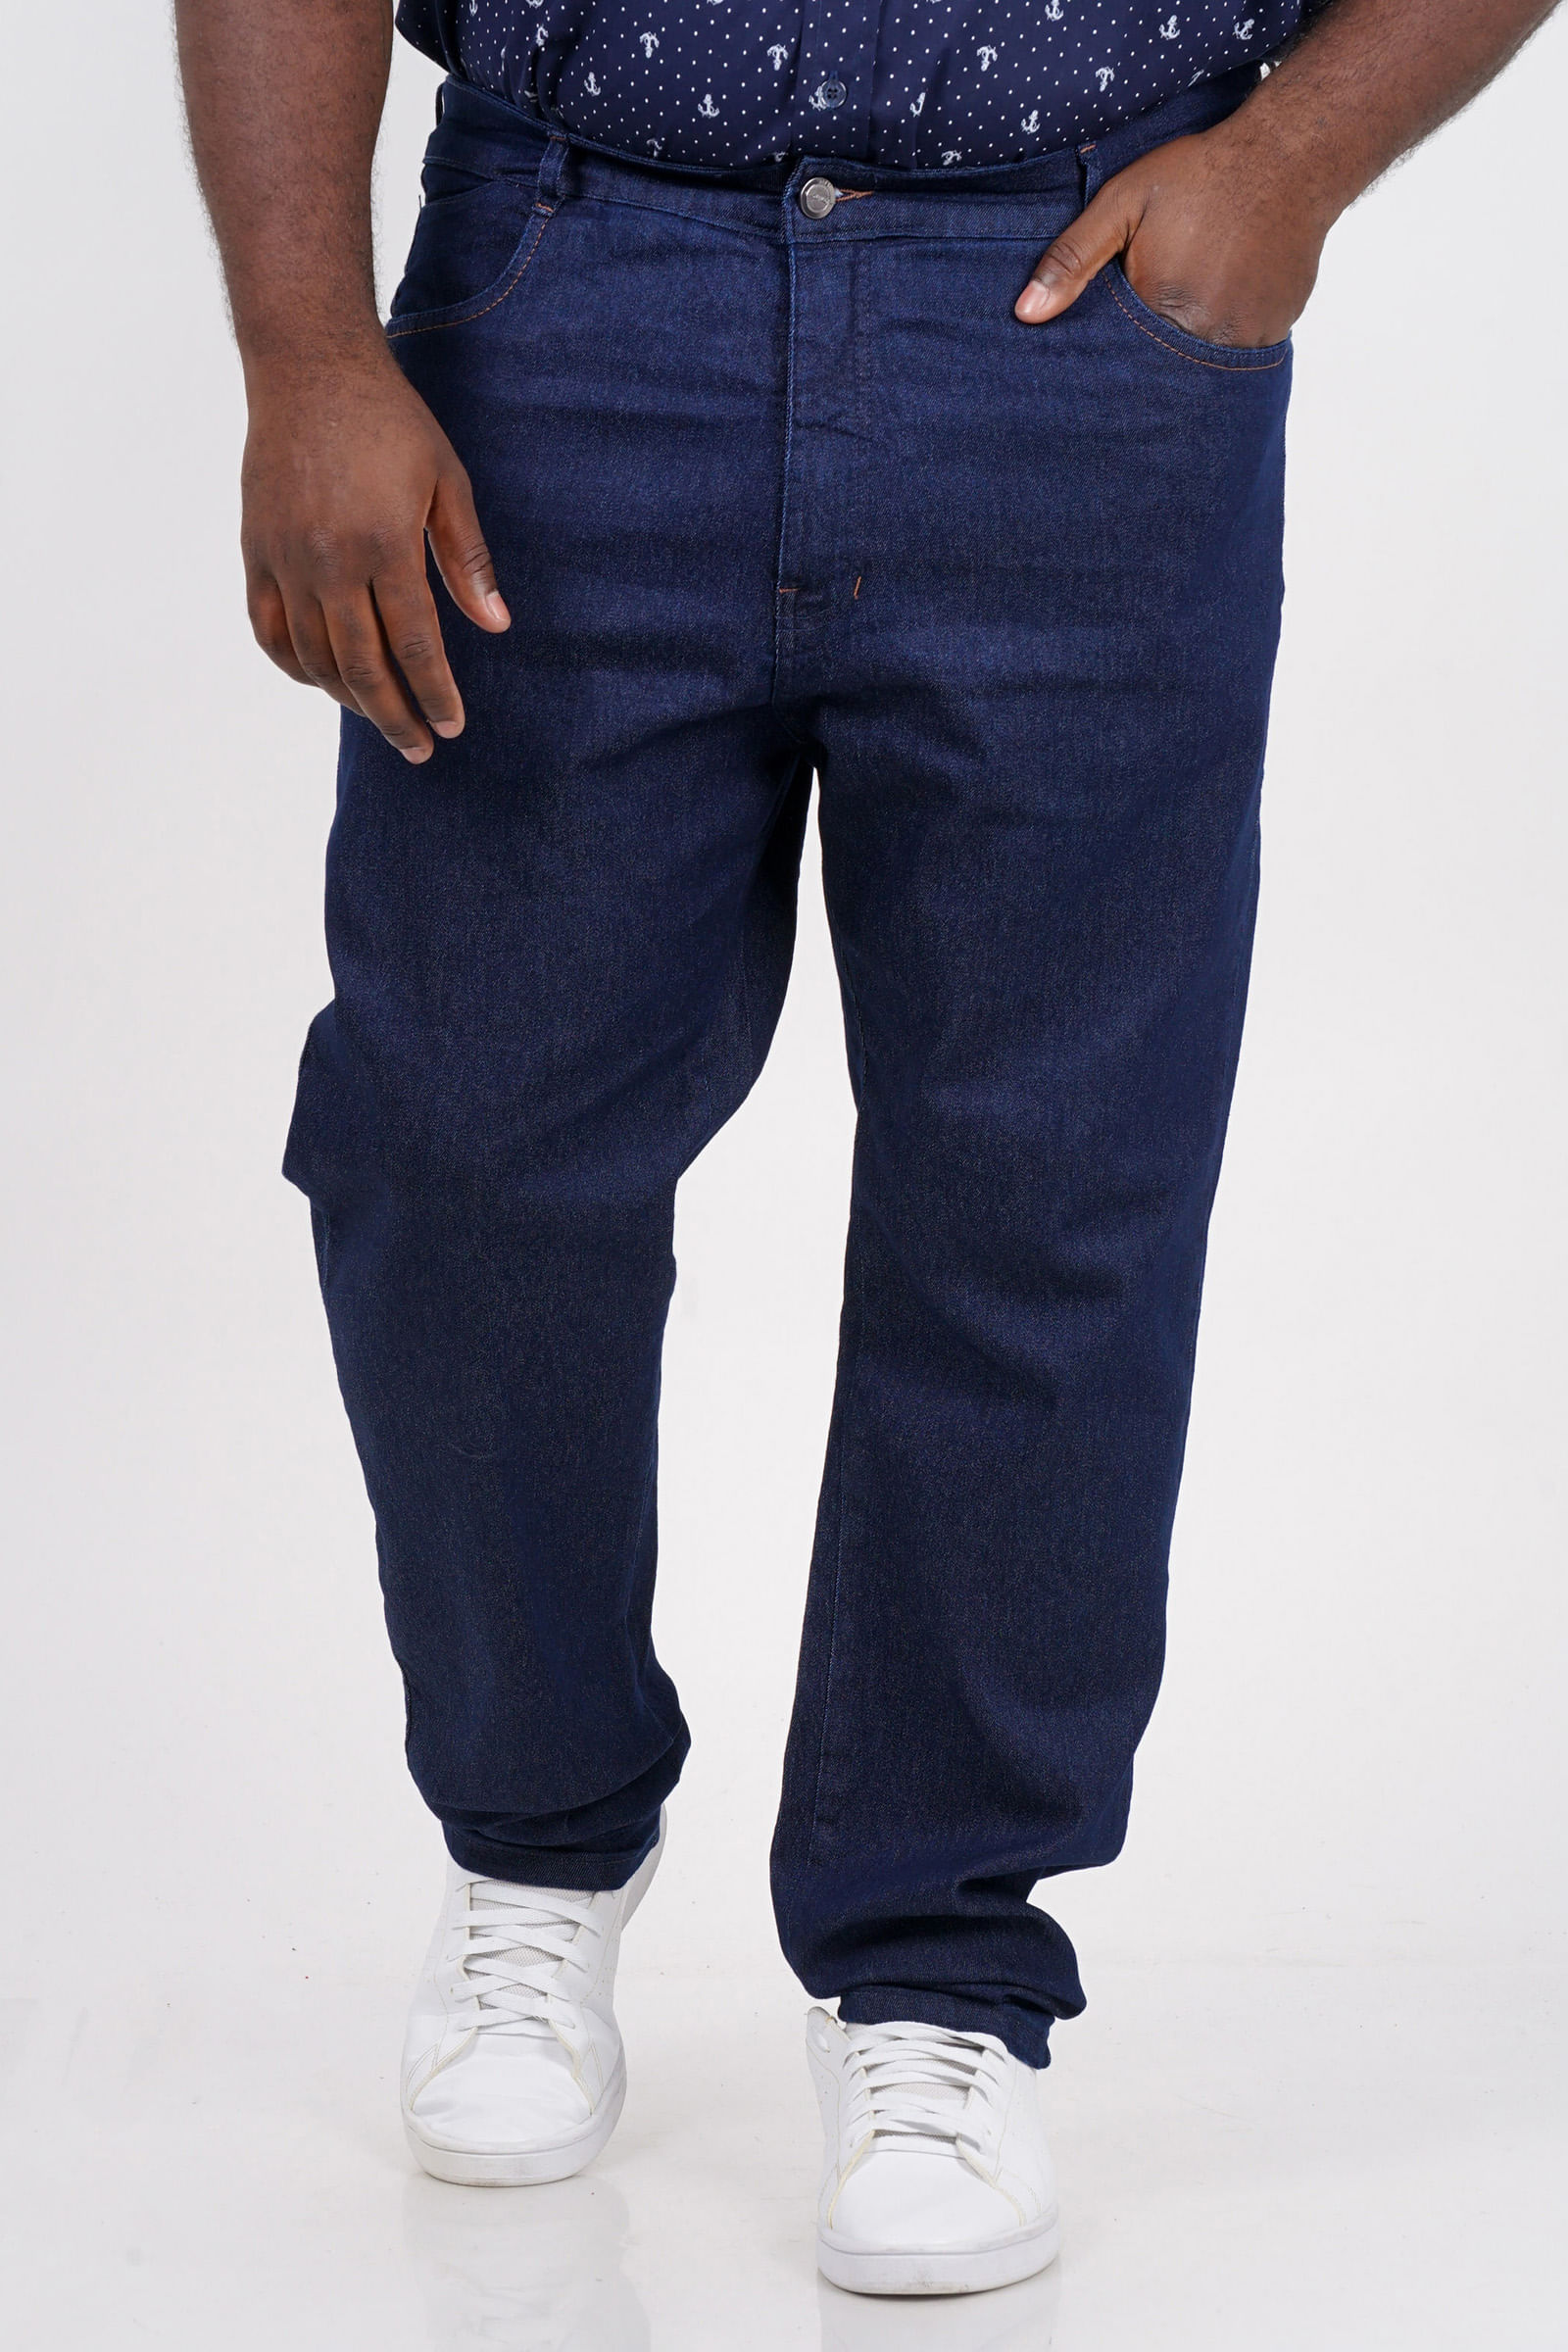 Calca-reta-jeans-plus-size